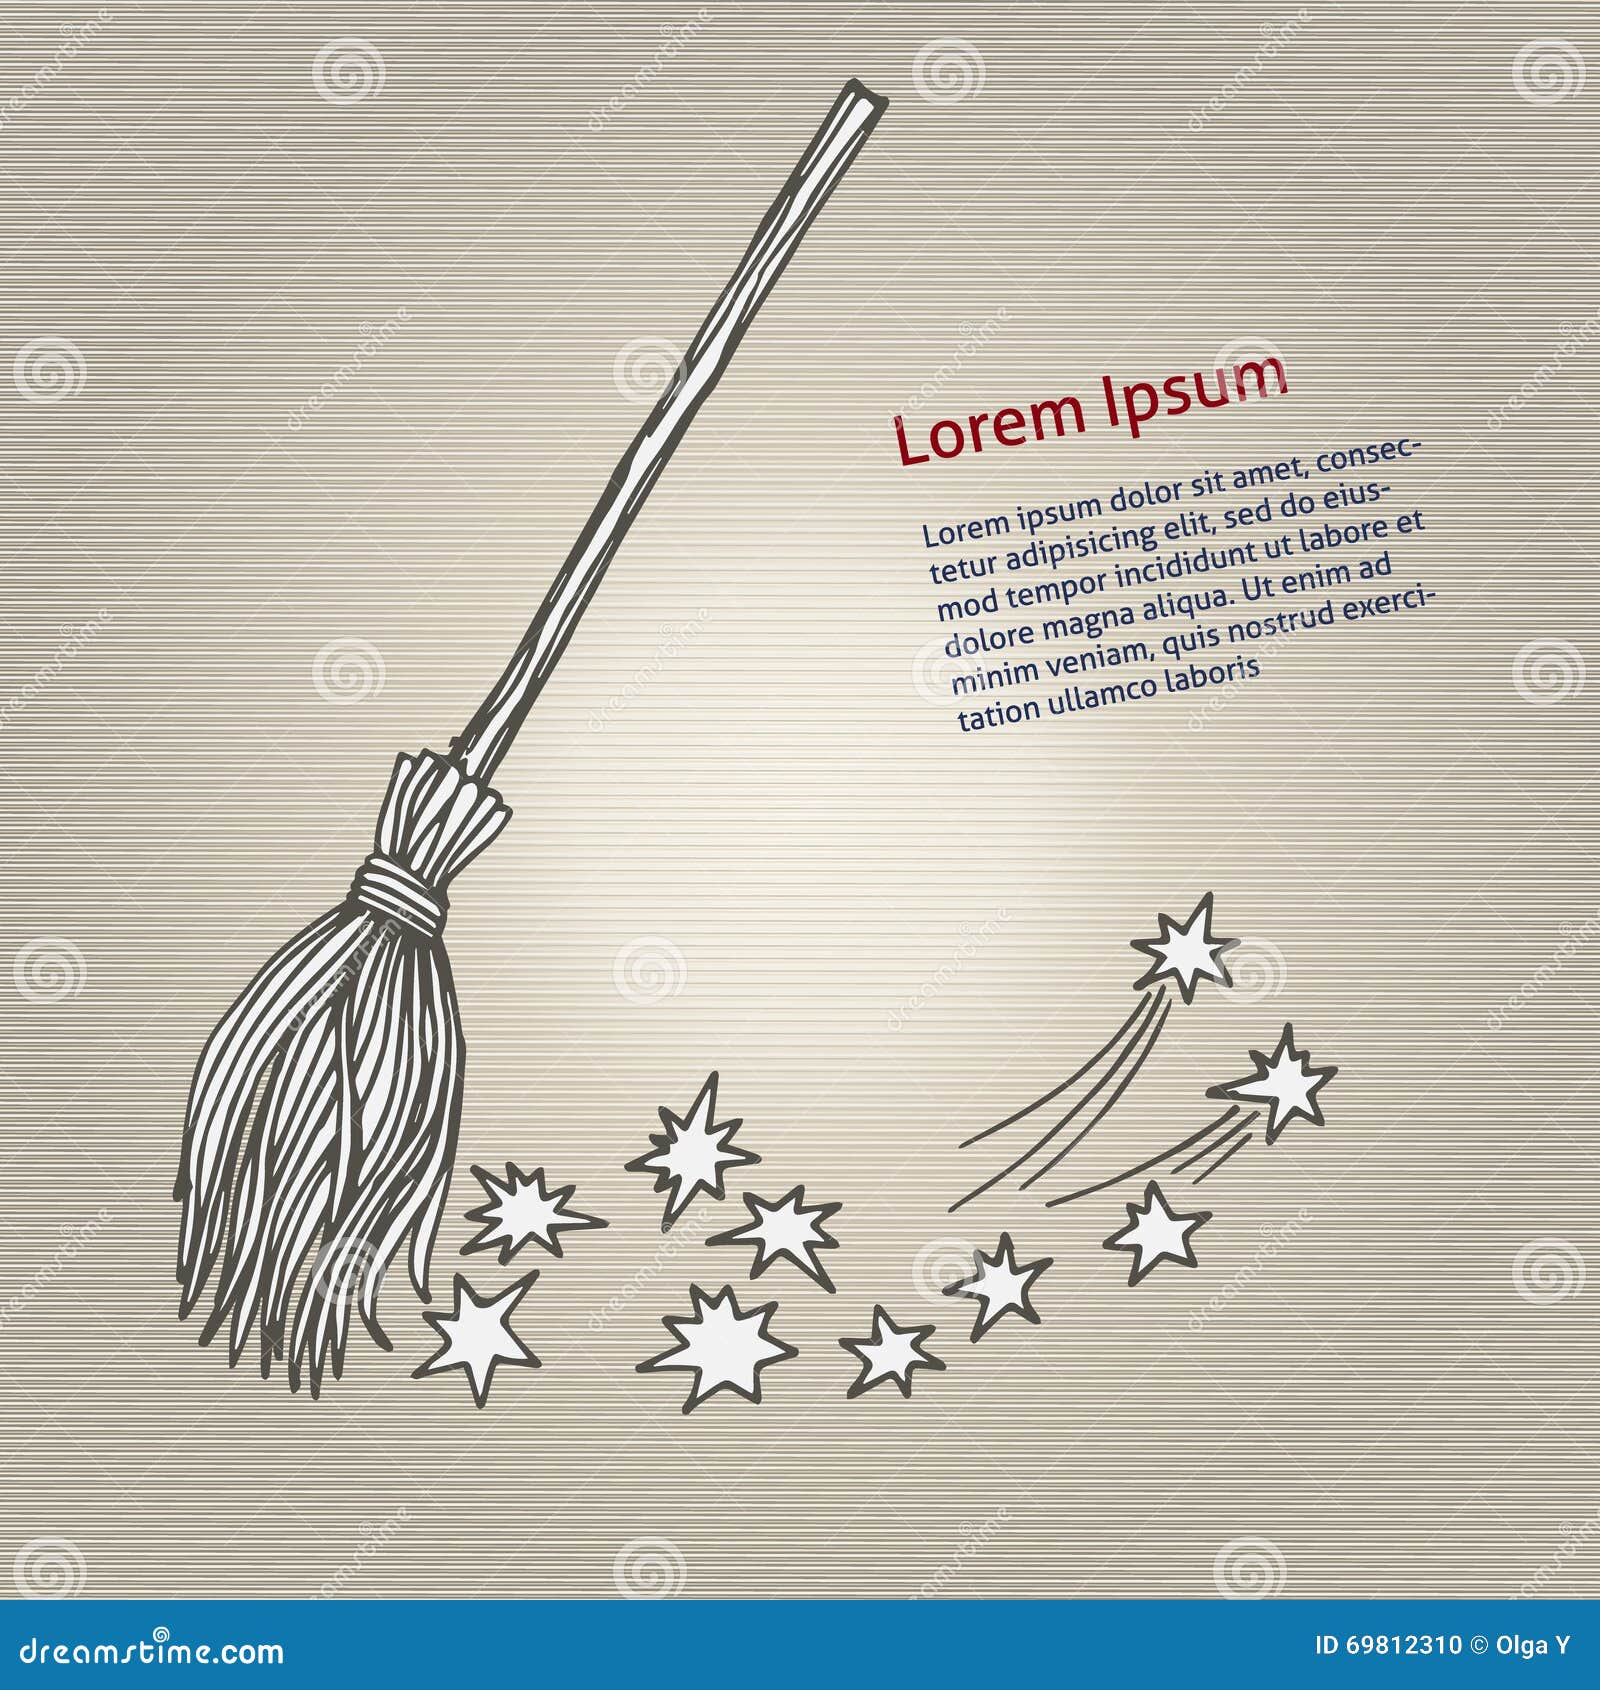 Laurel Neustadter Illustration EDM 149  Draw a Broom